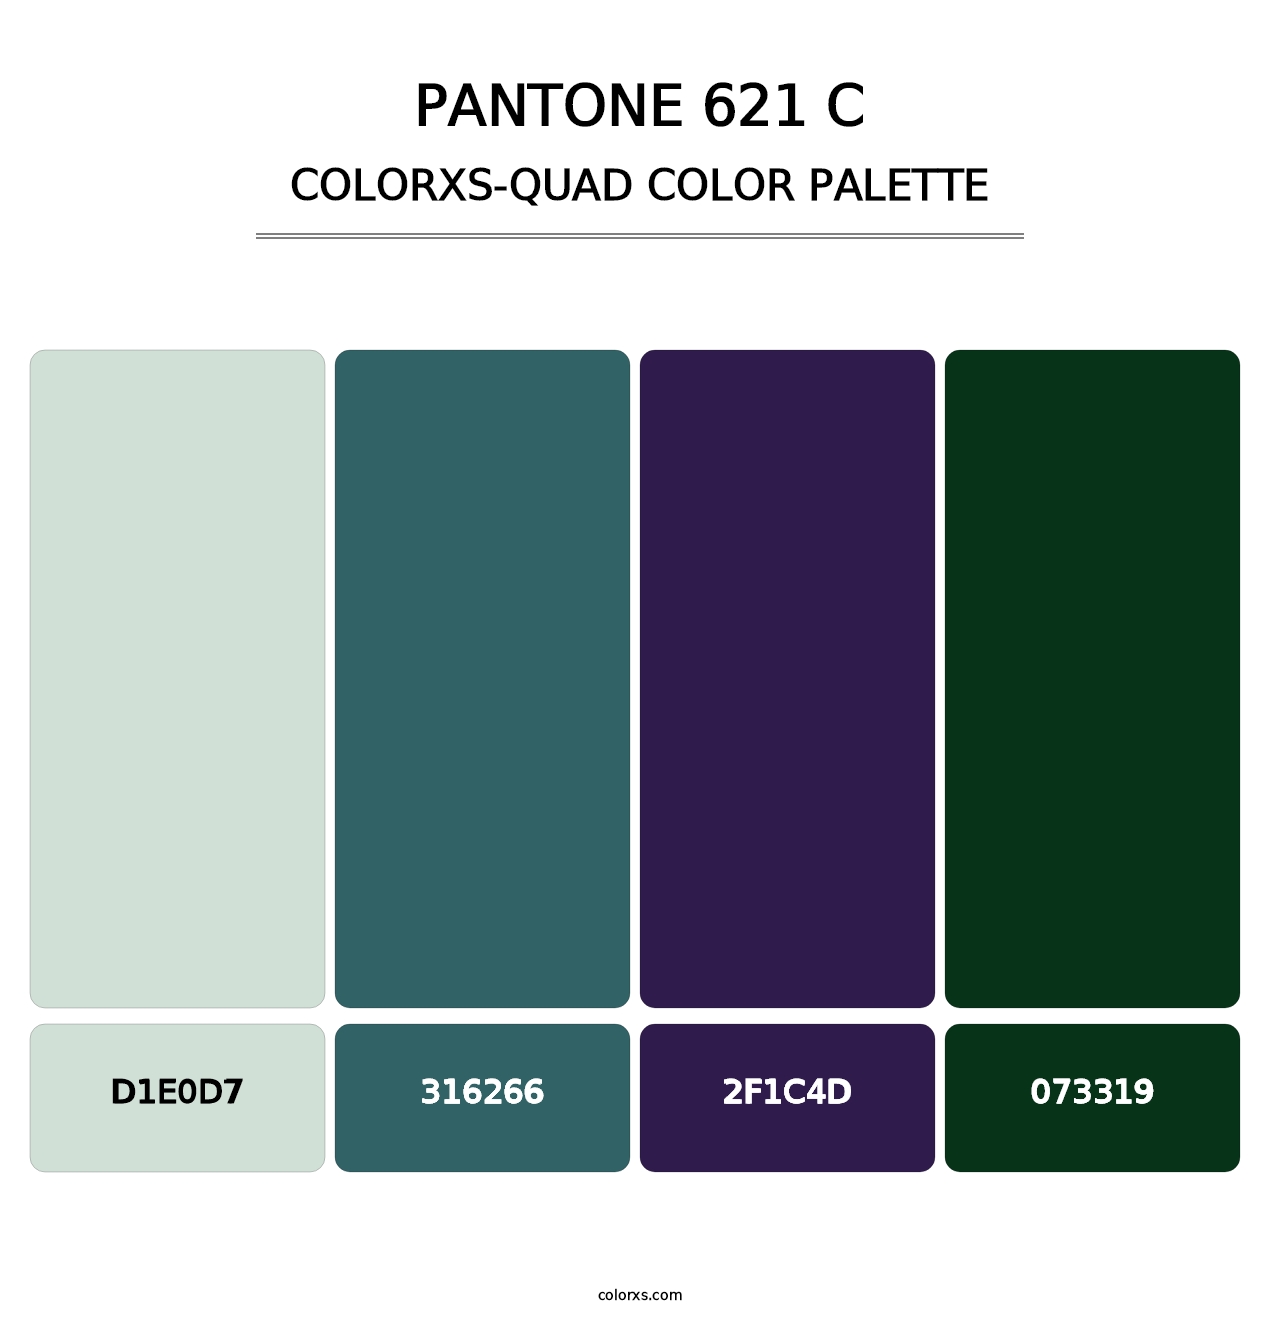 PANTONE 621 C - Colorxs Quad Palette